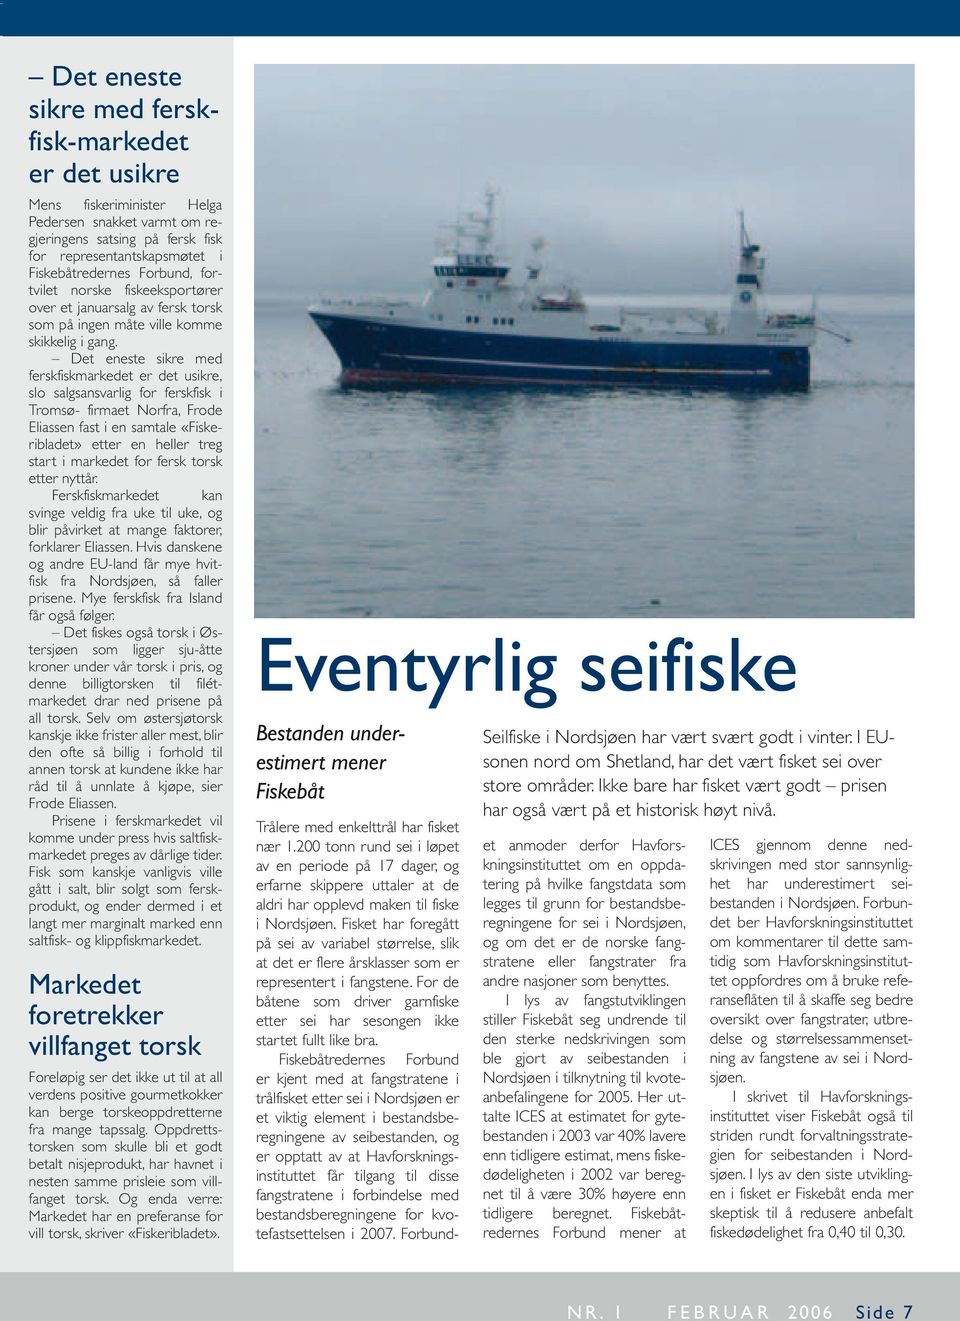 Det eneste sikre med ferskfiskmarkedet er det usikre, slo salgsansvarlig for ferskfisk i Tromsø- firmaet Norfra, Frode Eliassen fast i en samtale «Fiskeribladet» etter en heller treg start i markedet